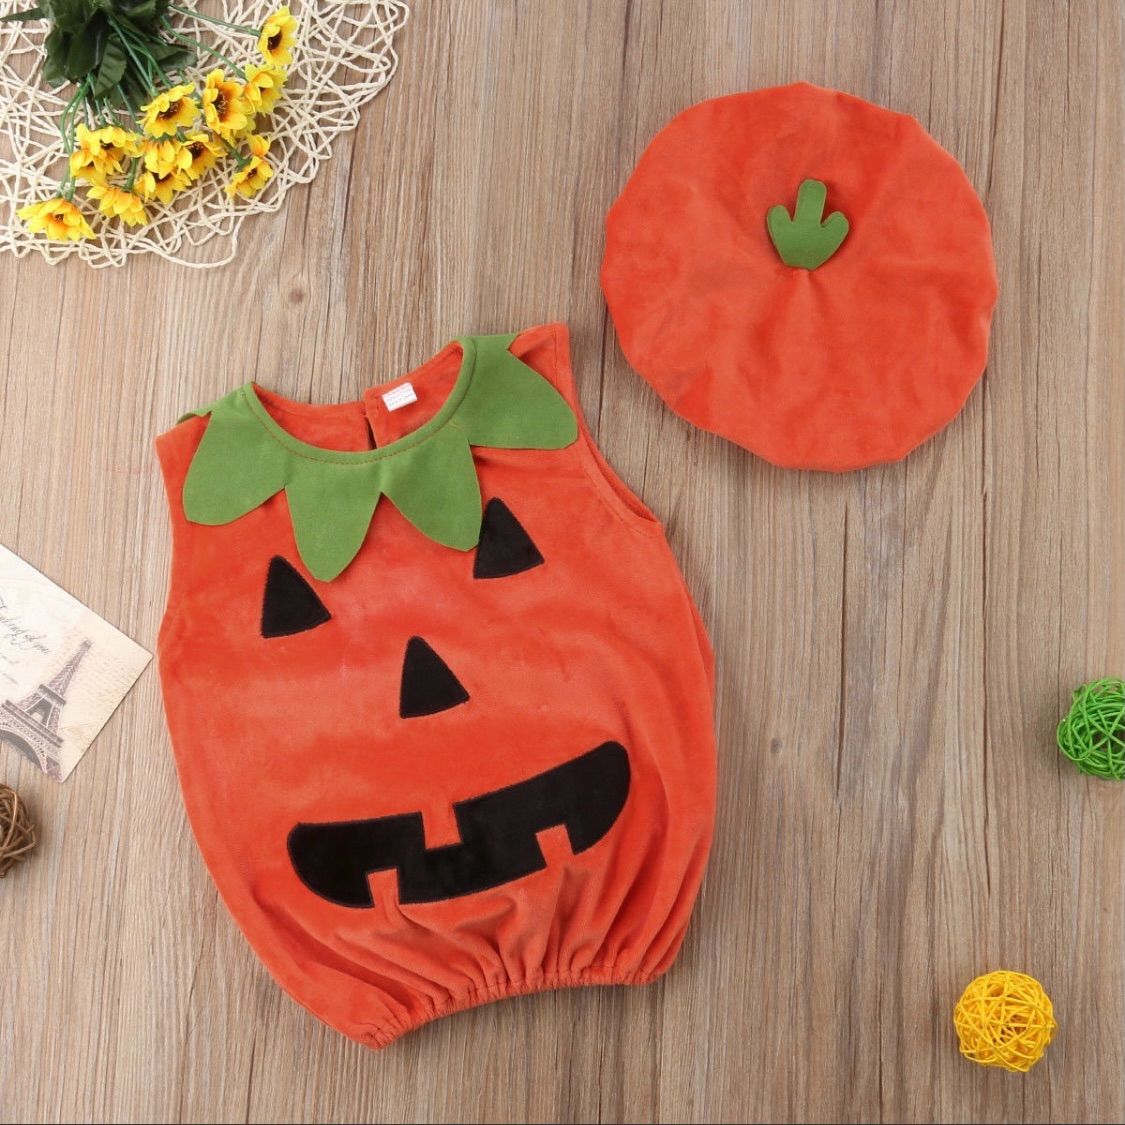 新品未使用 ハロウィン ベビー キッズ 仮装 コスプレ かぼちゃ パンプキン R's select shop ♥ メルカリ